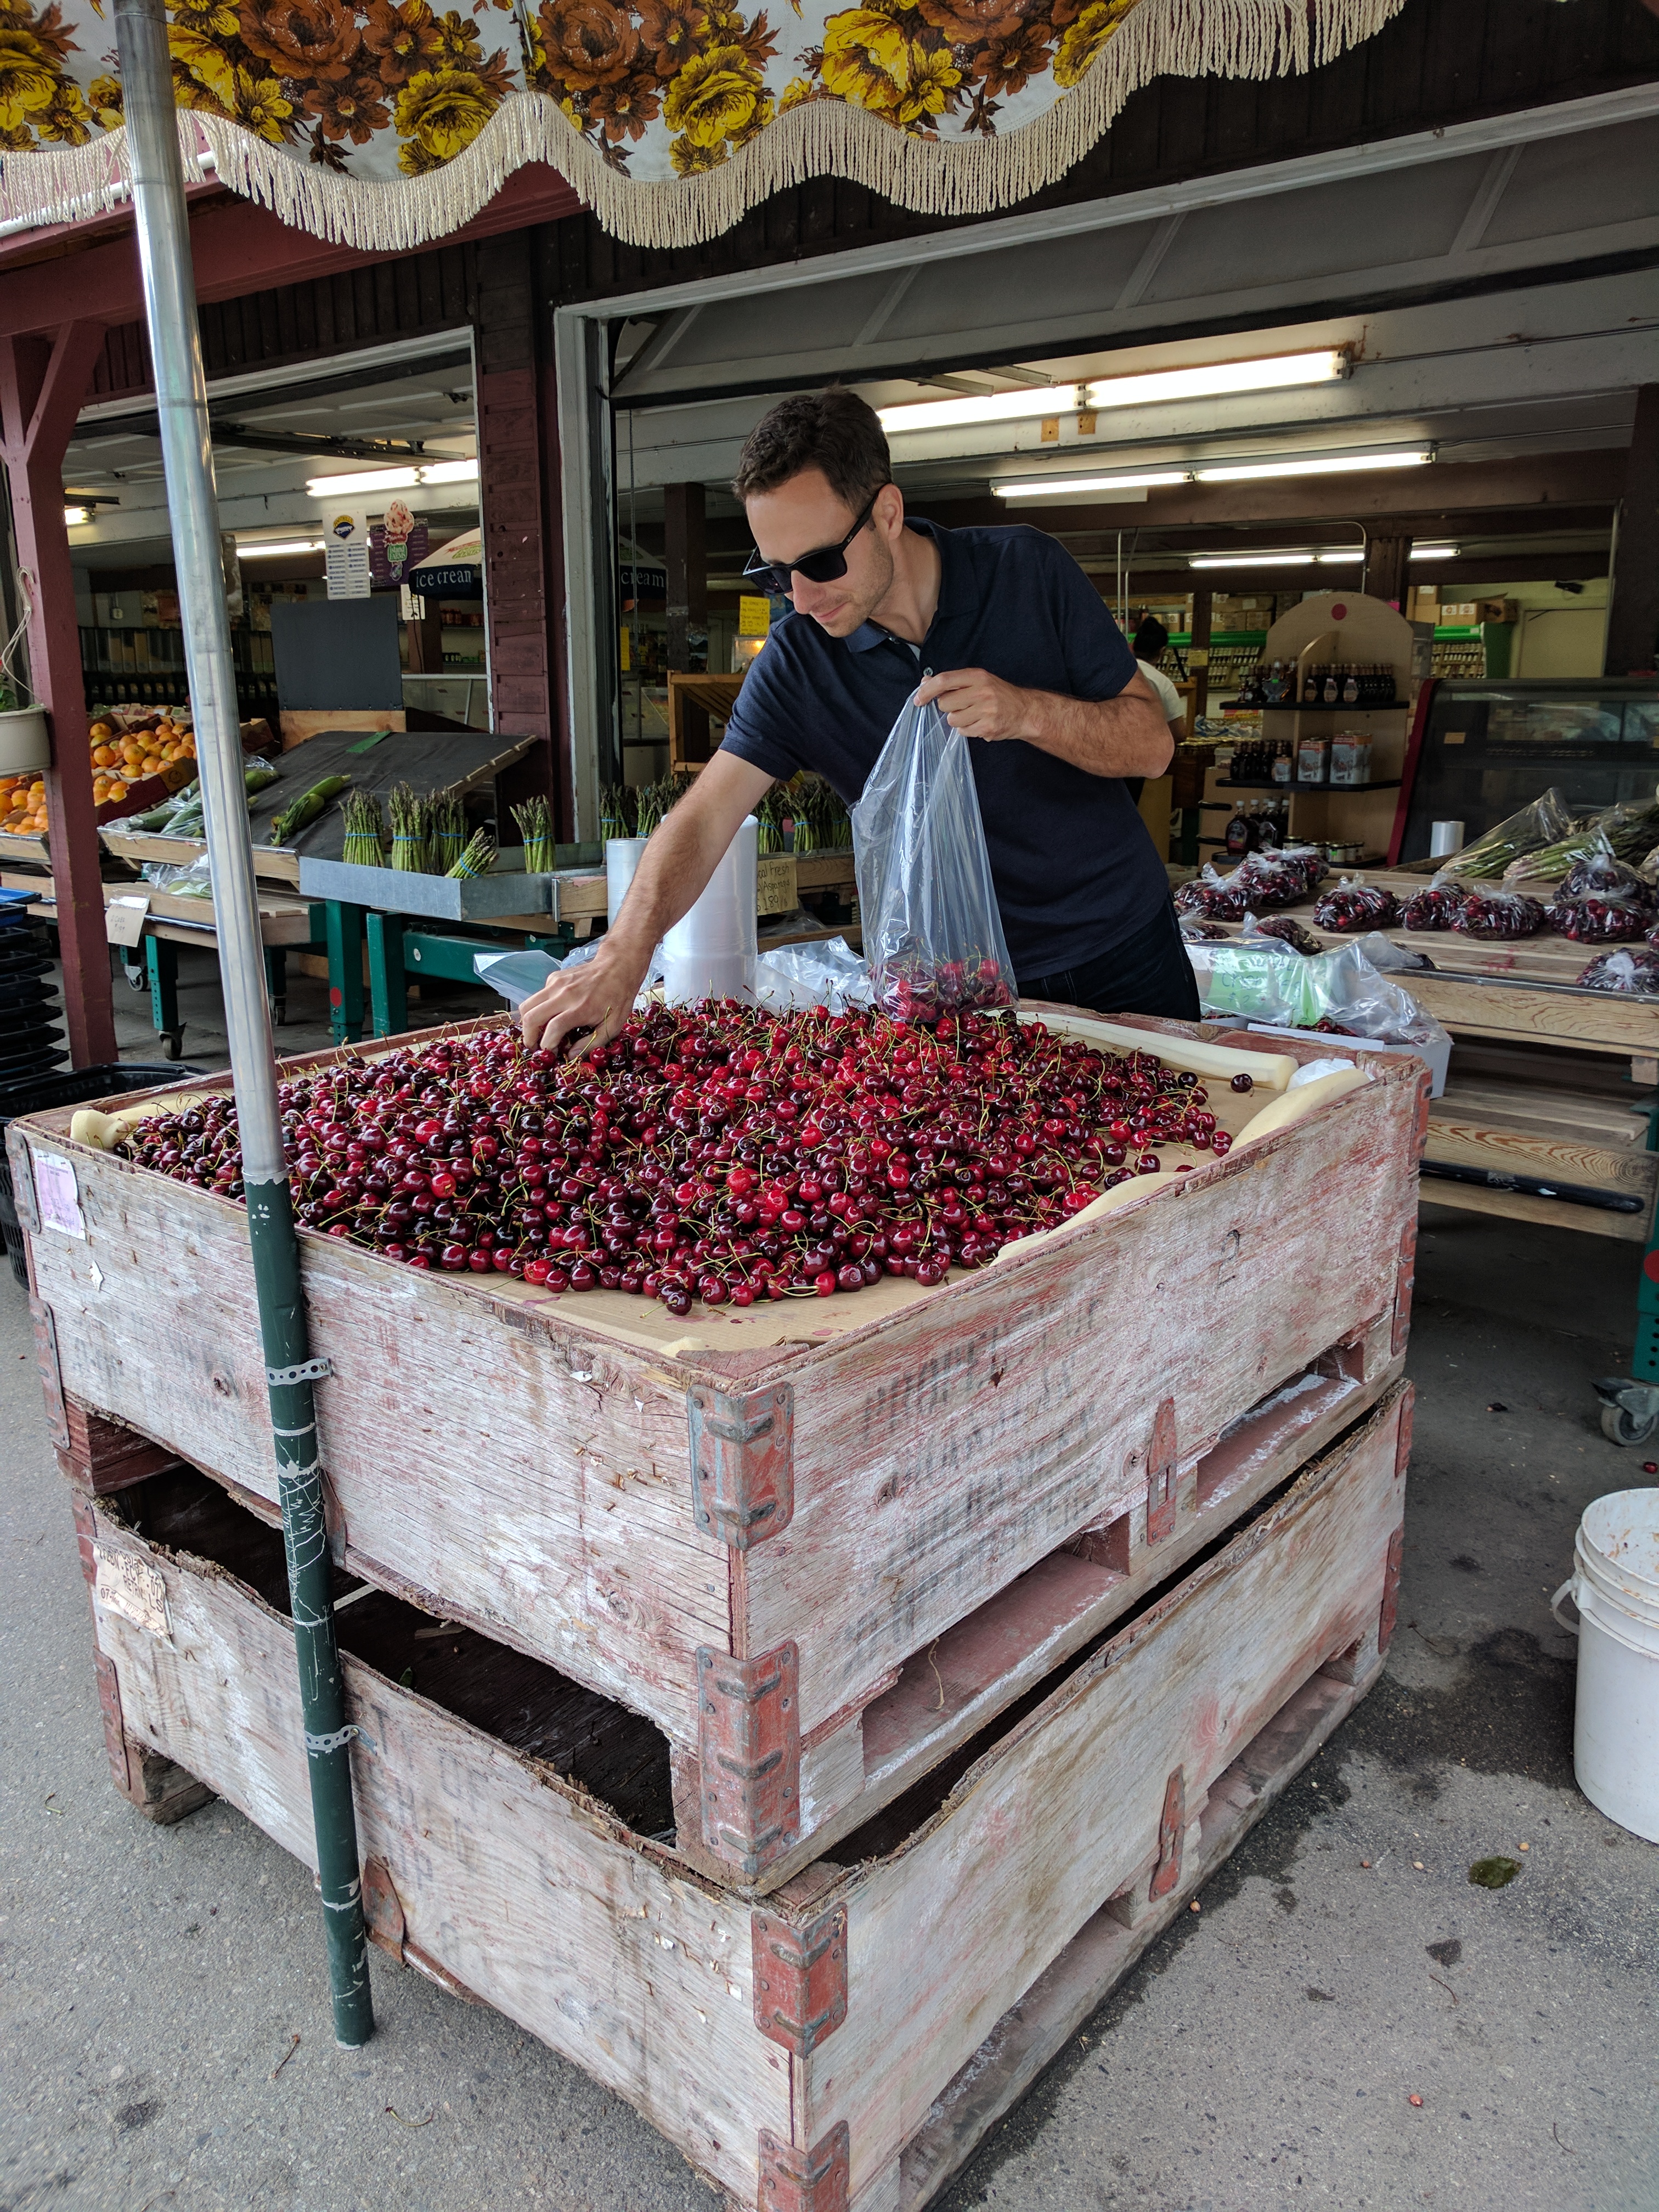 Jason buying cherries in Keremeos